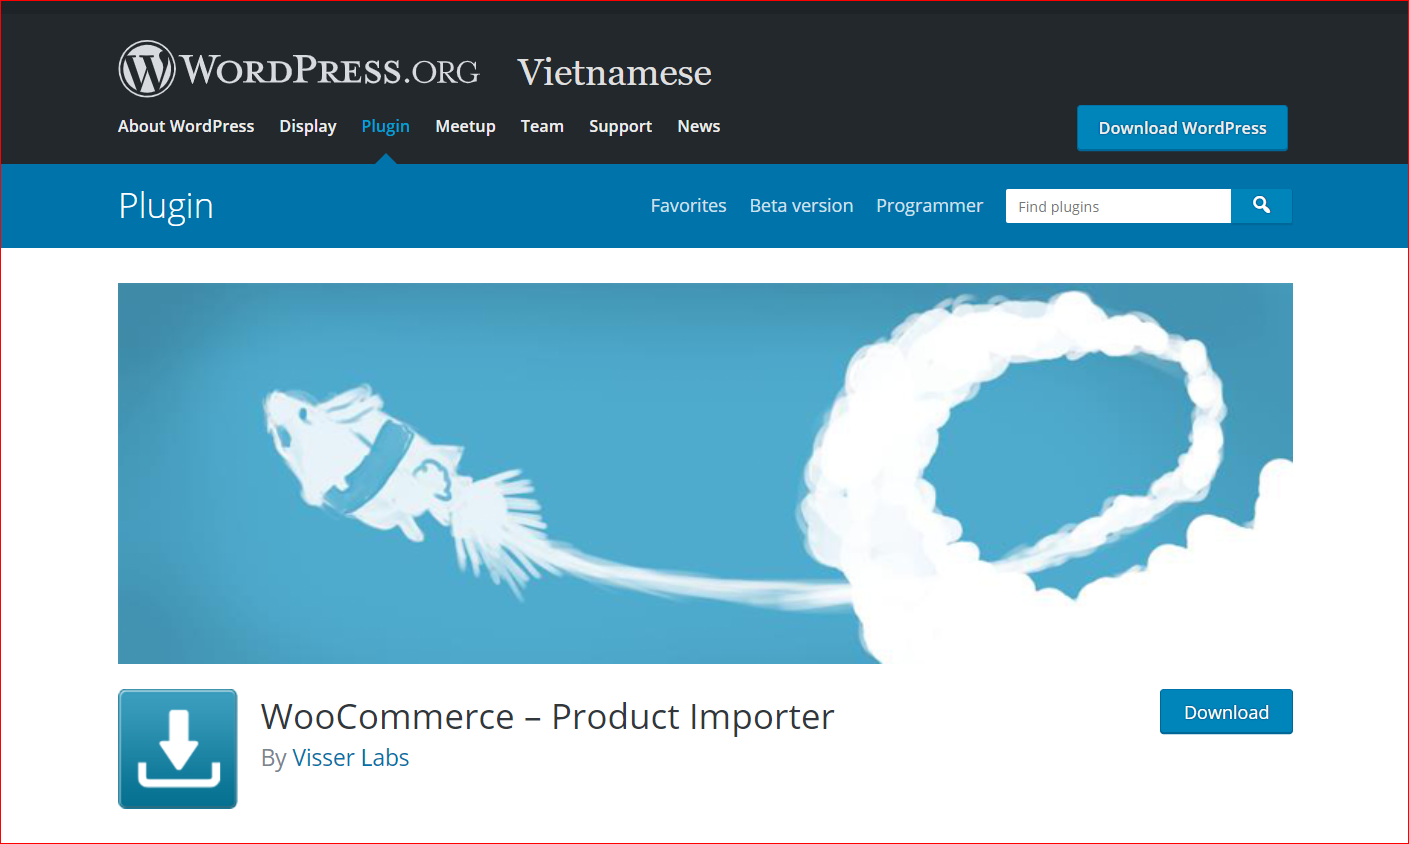 WooCommerce – Product Importer